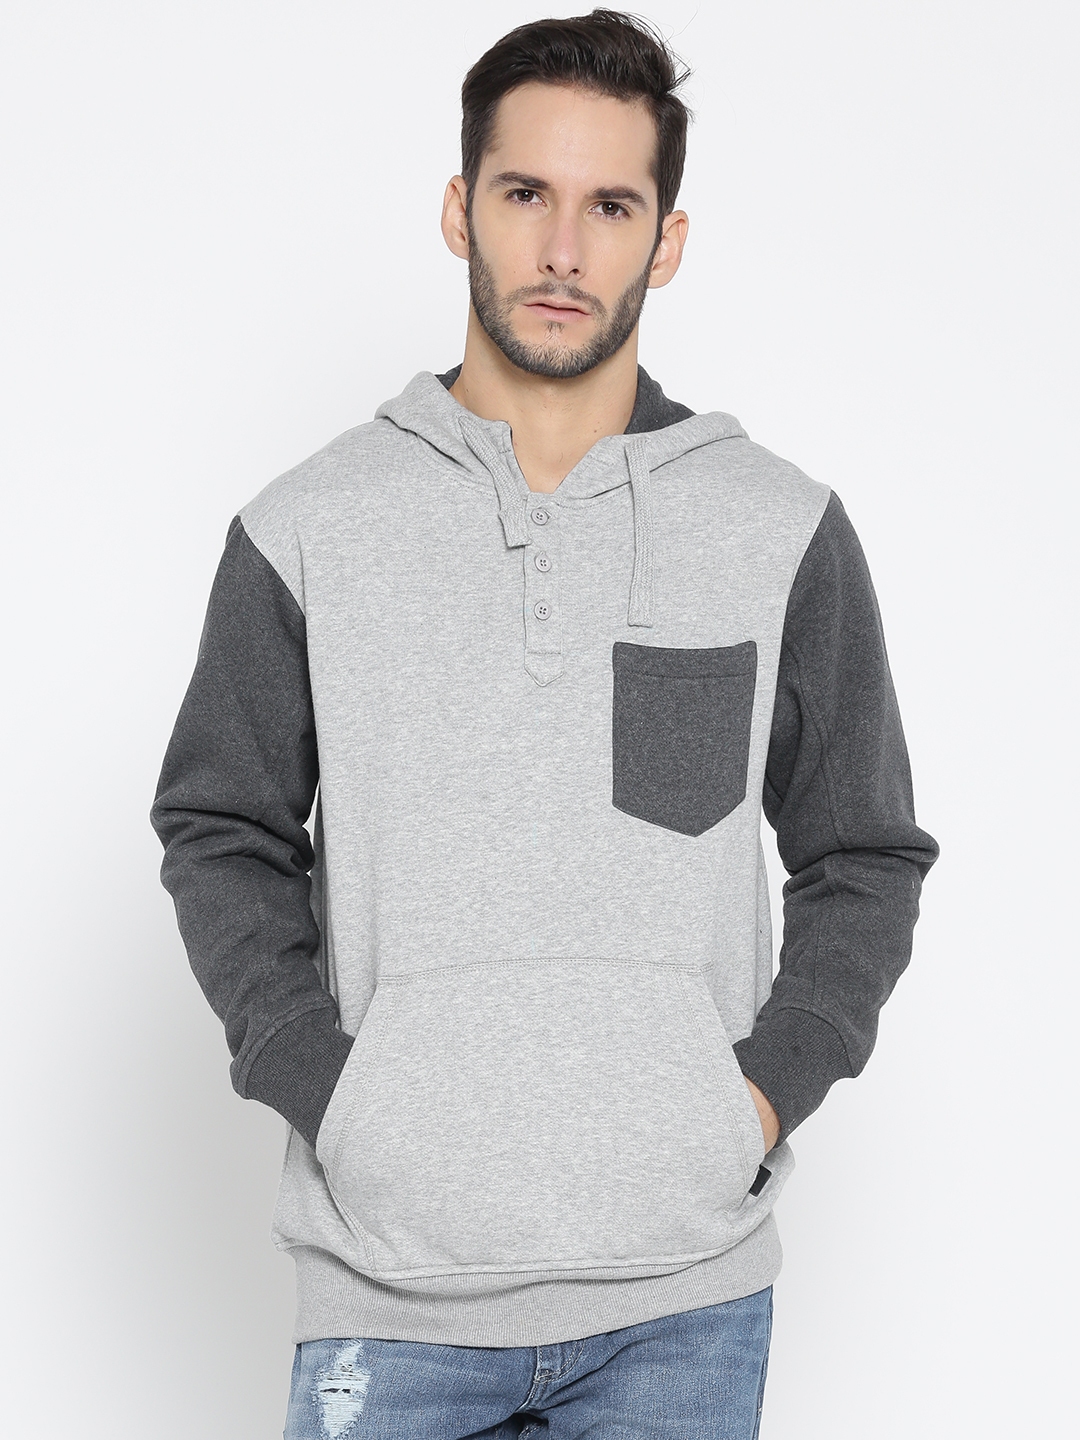 Buy Roadster Men Grey Melange Solid Hooded Sweatshirt - Sweatshirts for Men  2038875